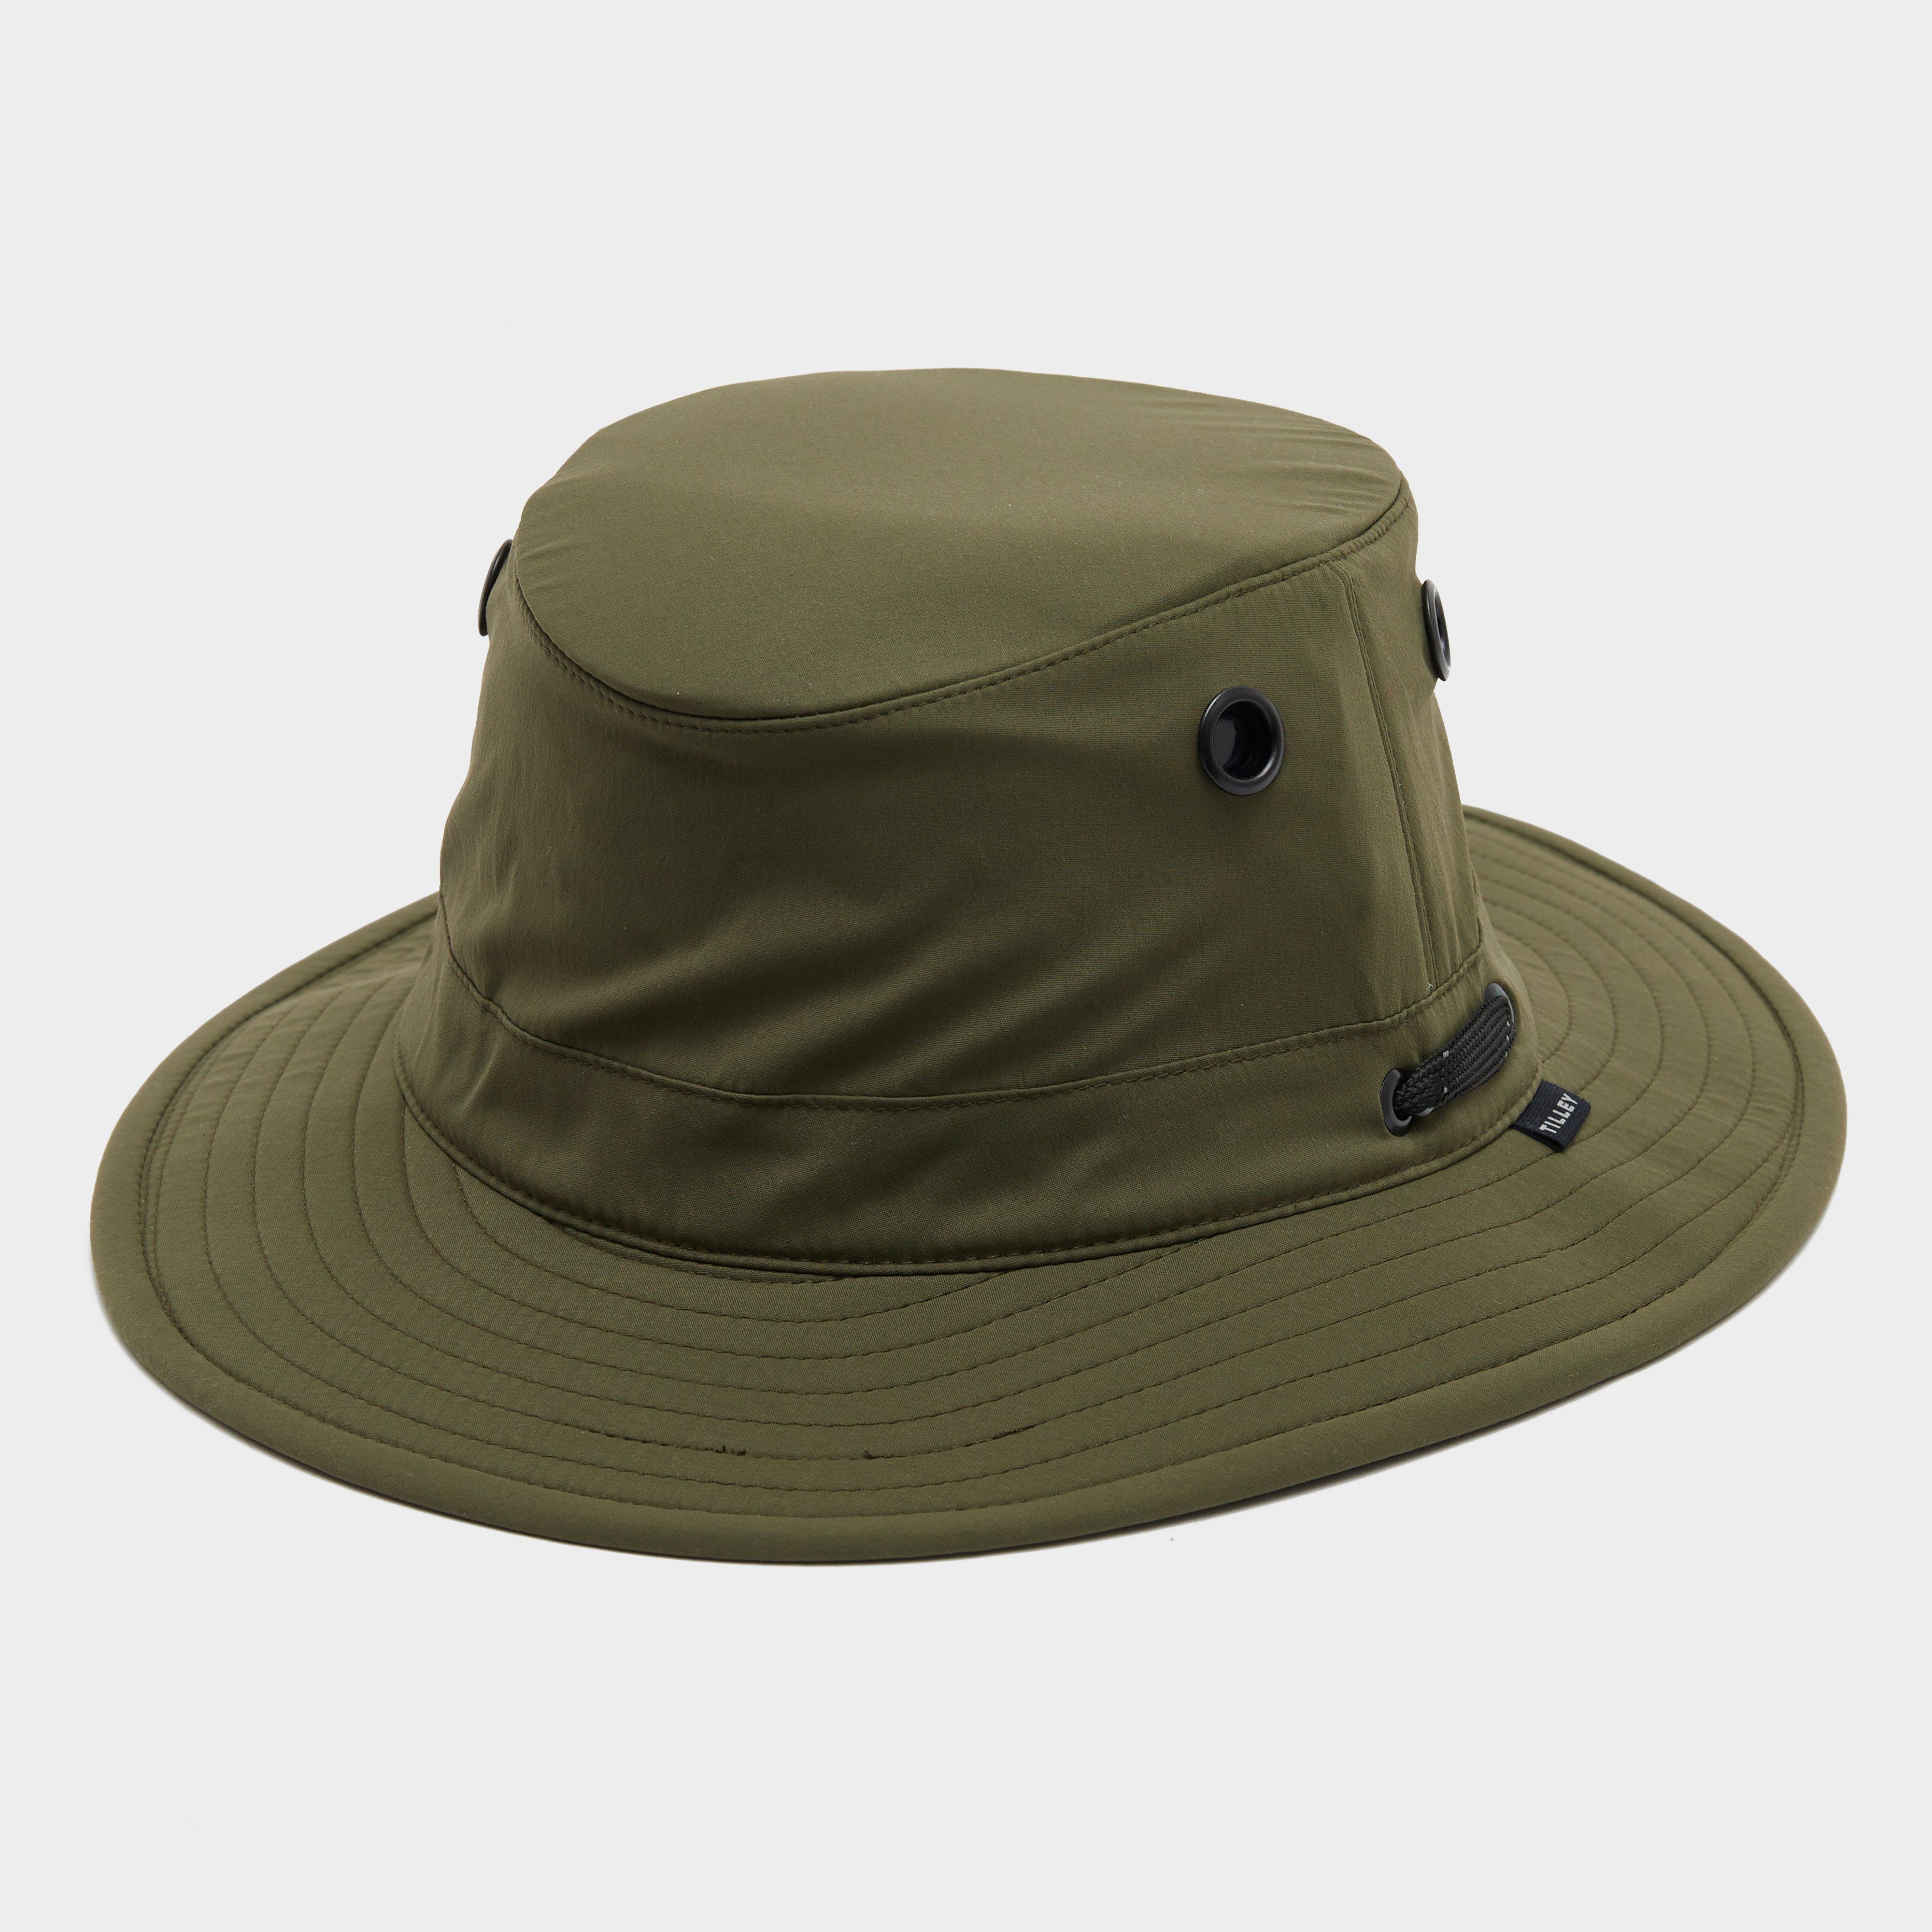  Tilley Ultralight T5 Classic Hat, Green